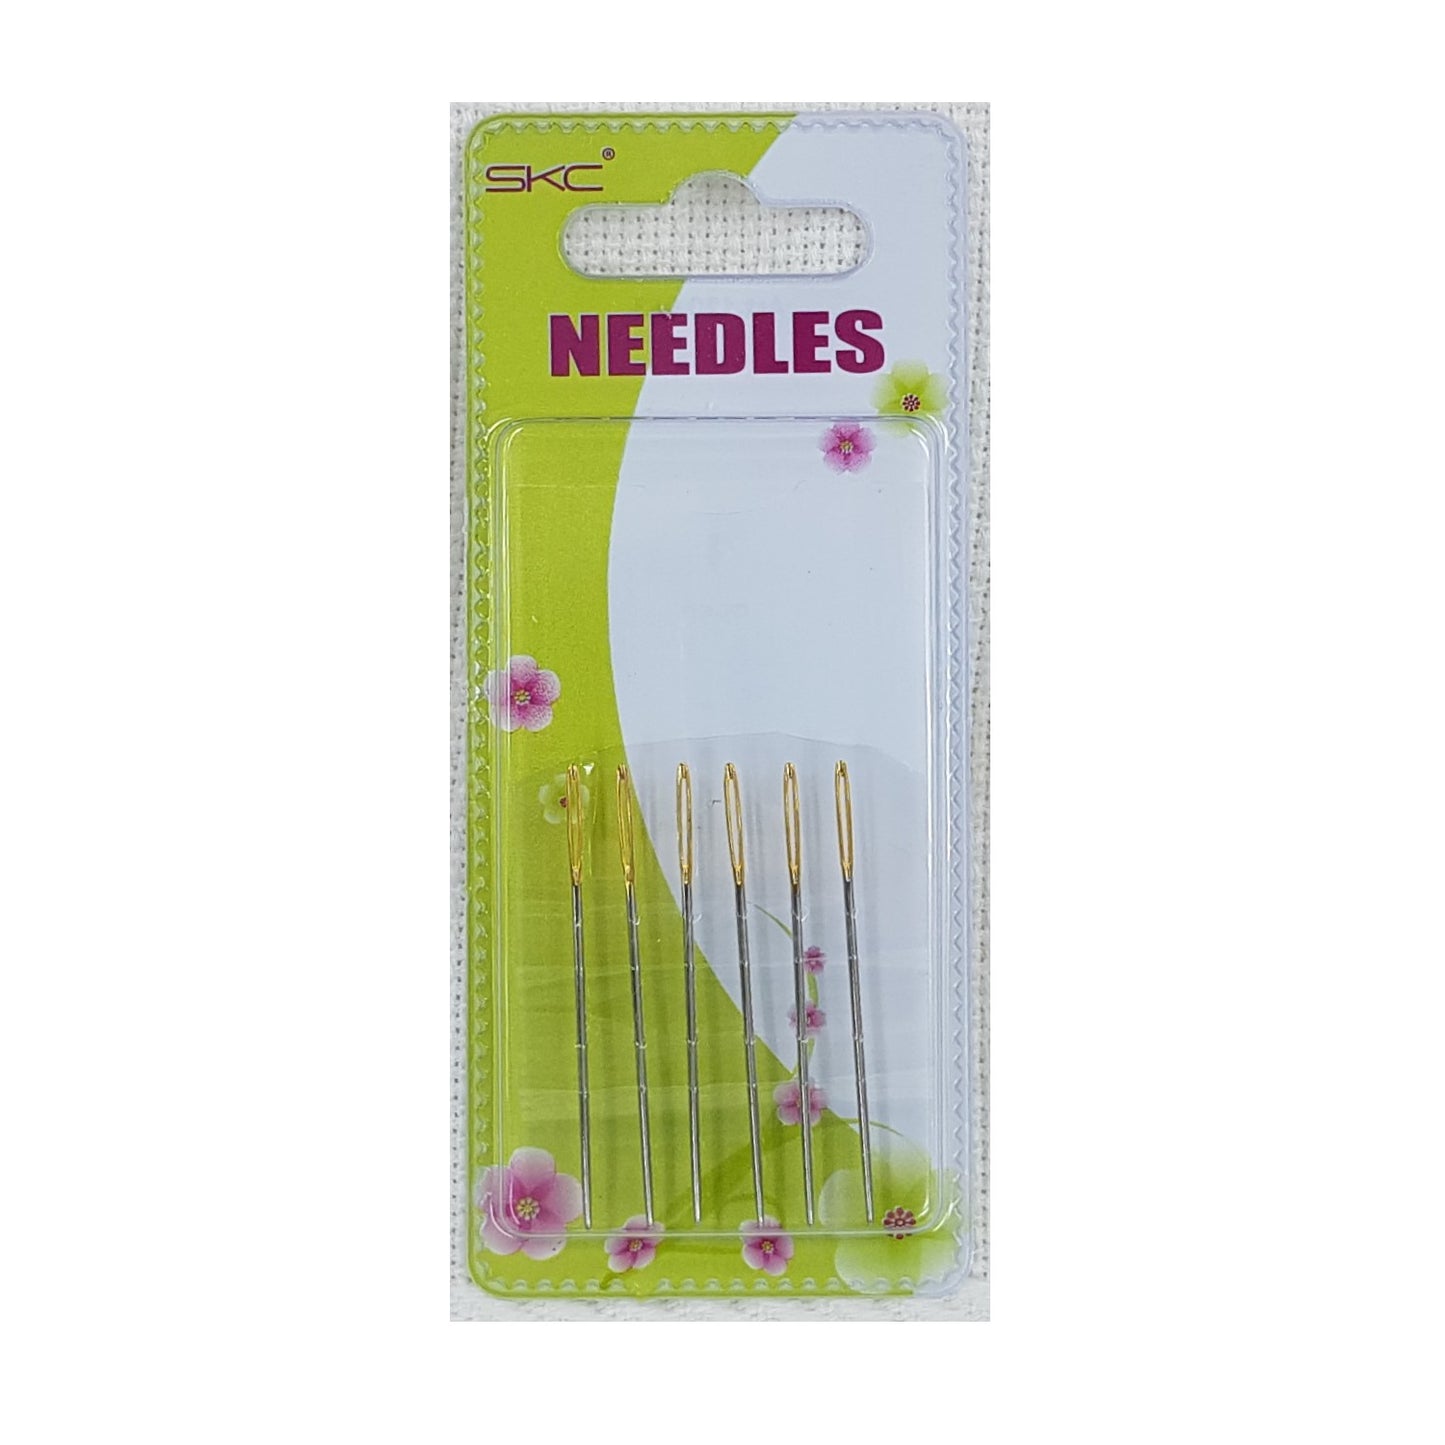 6 Medium Size Etamine Needles One Size. 4.55cm Long Needle (120053)